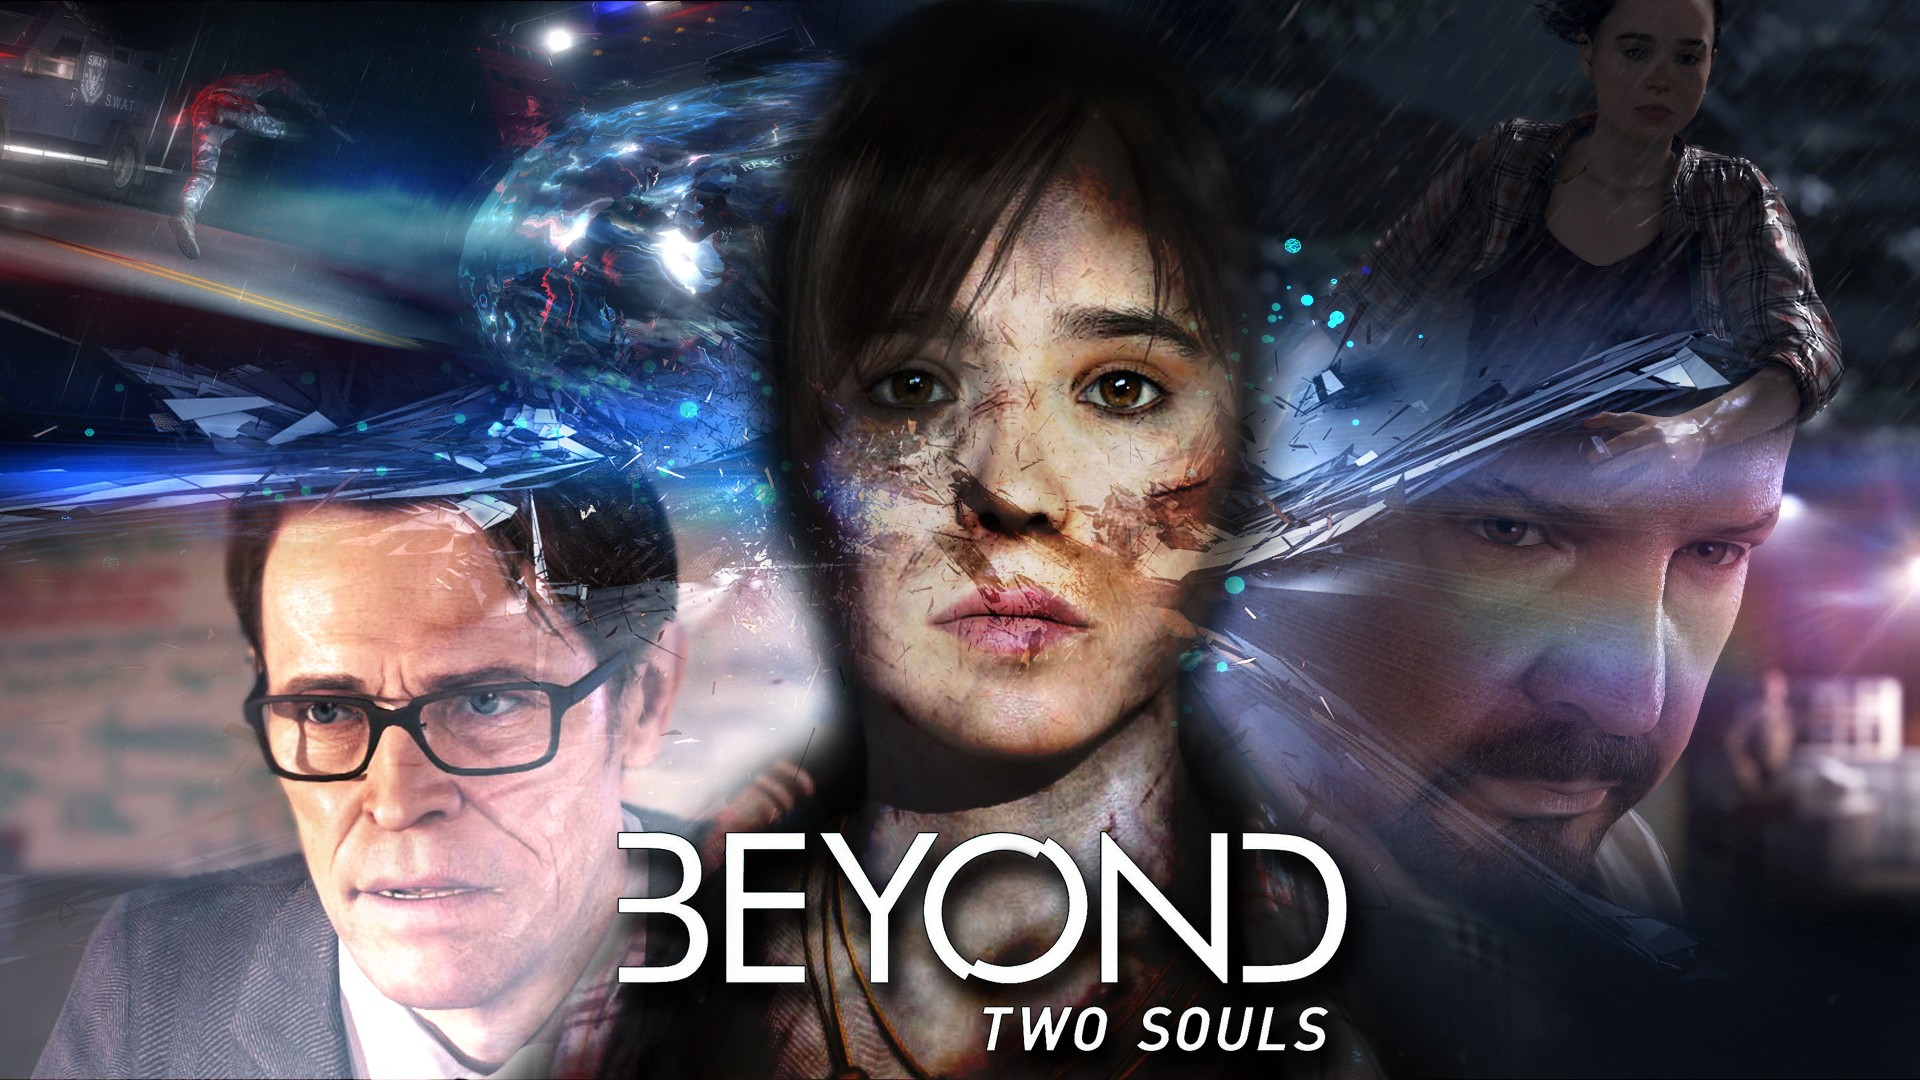 Beyond 2 souls. Игра за гранью 2 души. За гранью: две души / Beyond: two Souls. Beyond two Souls Джоди. За гранью души игра.